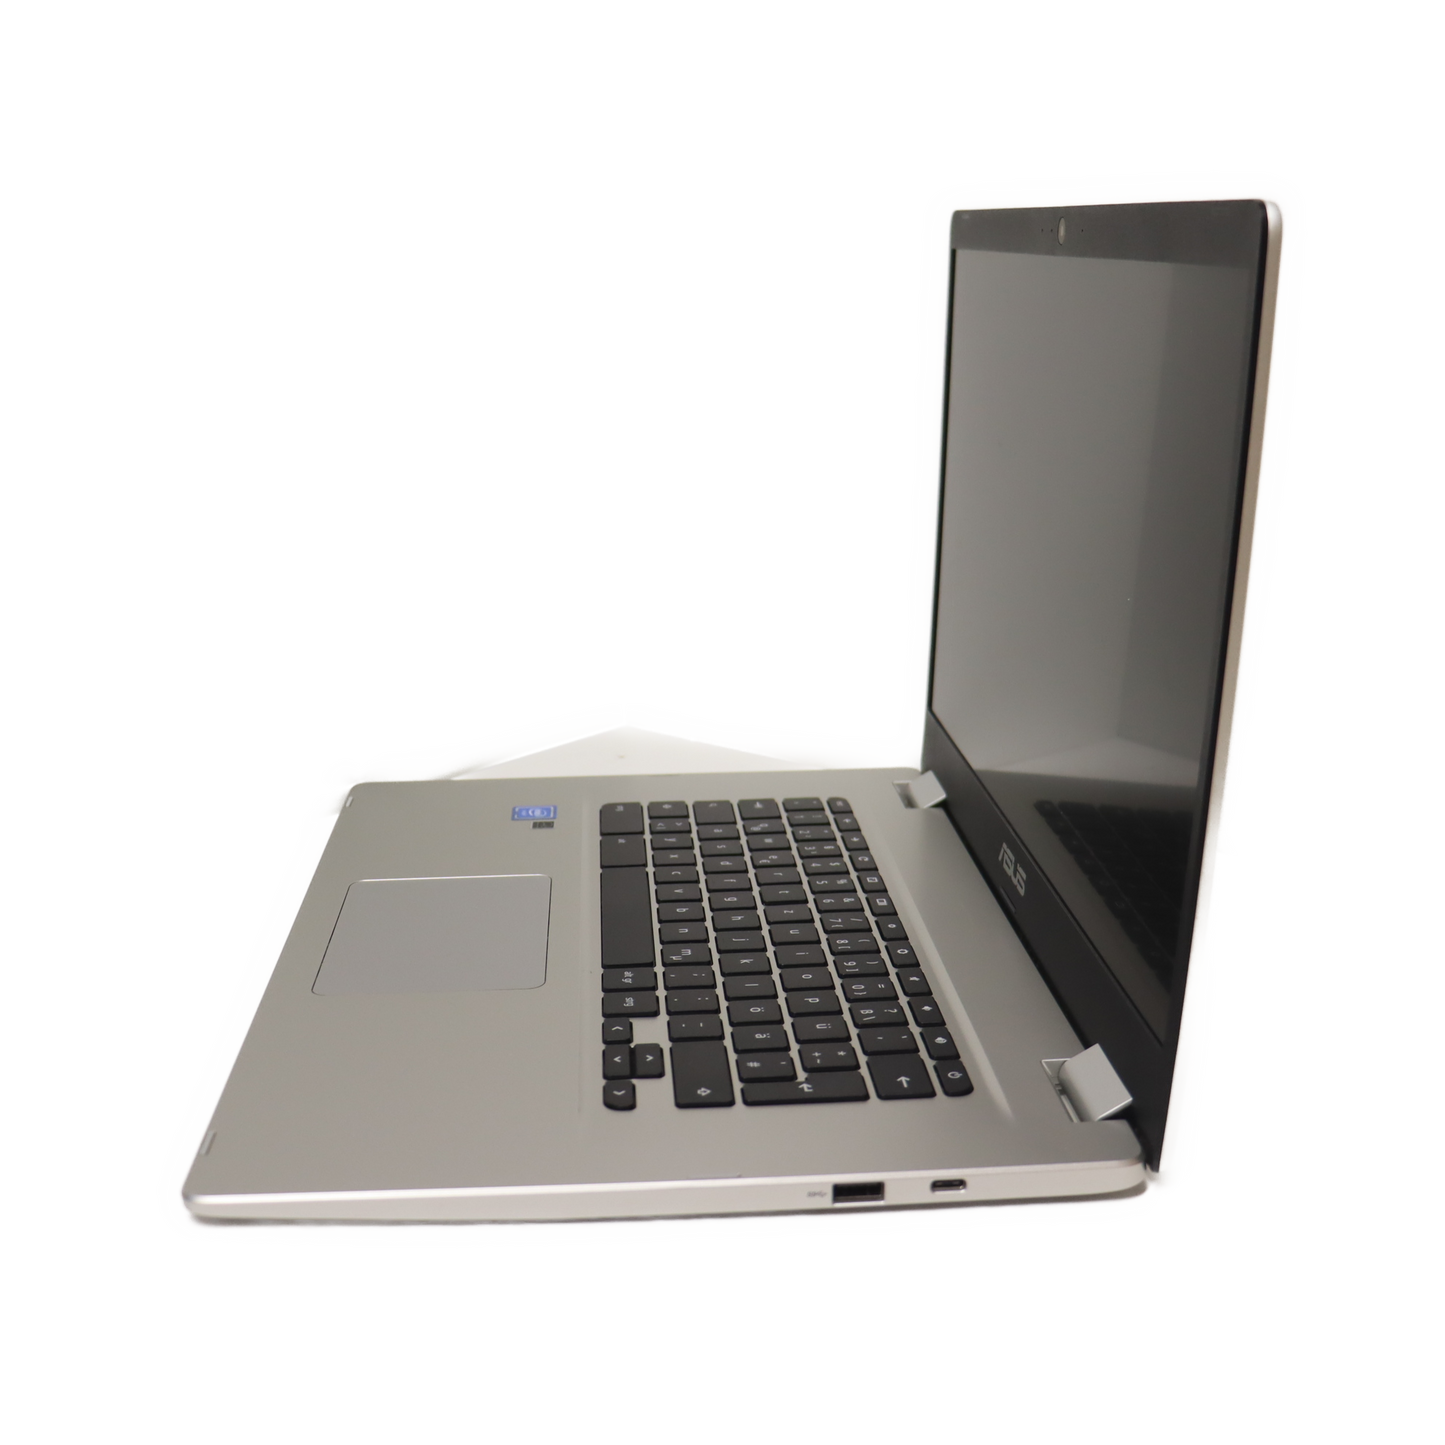 Asus Chromebook C523N  15,6" FHD / Celeron N3350 / 4GB / 64GB ( ohne gewähr ) SN: MANXCV02P79340F